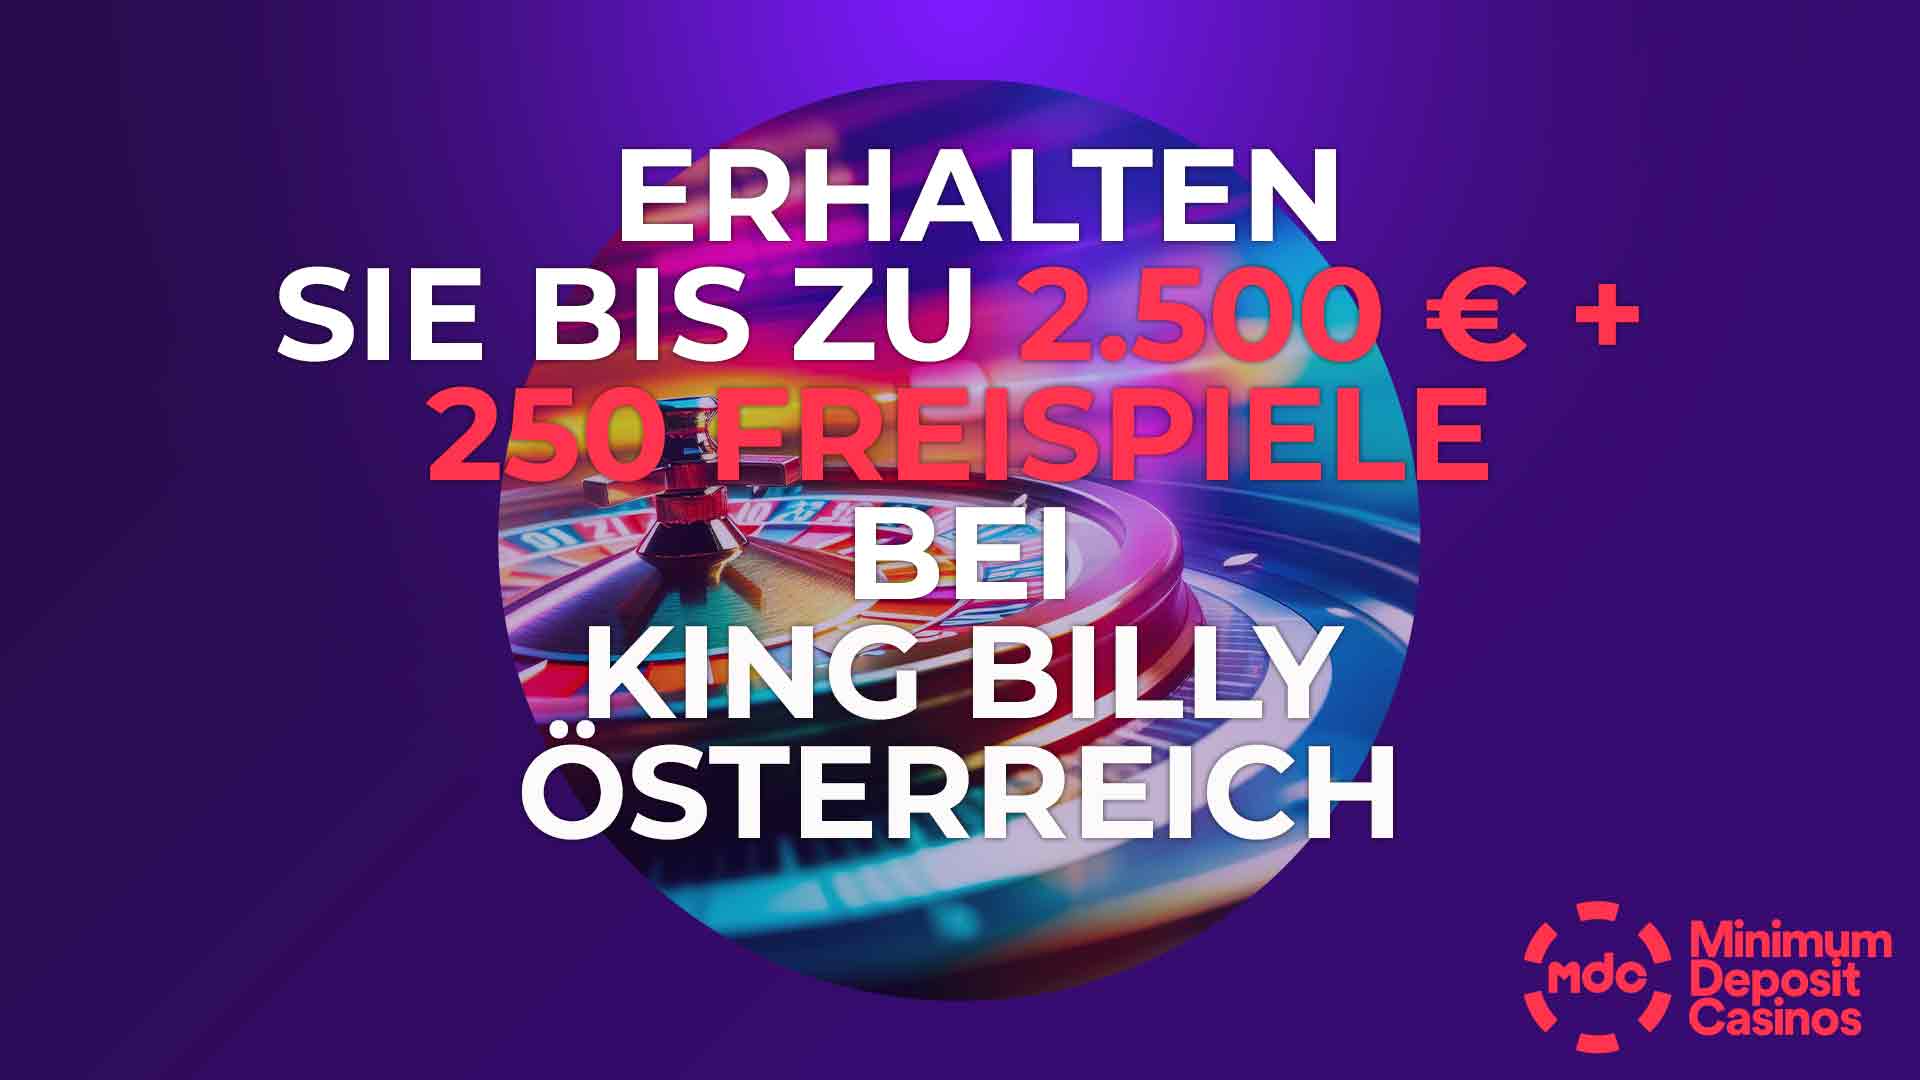 Erhalten Sie bis zu 2.500 € + 250 Freispiele bei King Billy Österreich